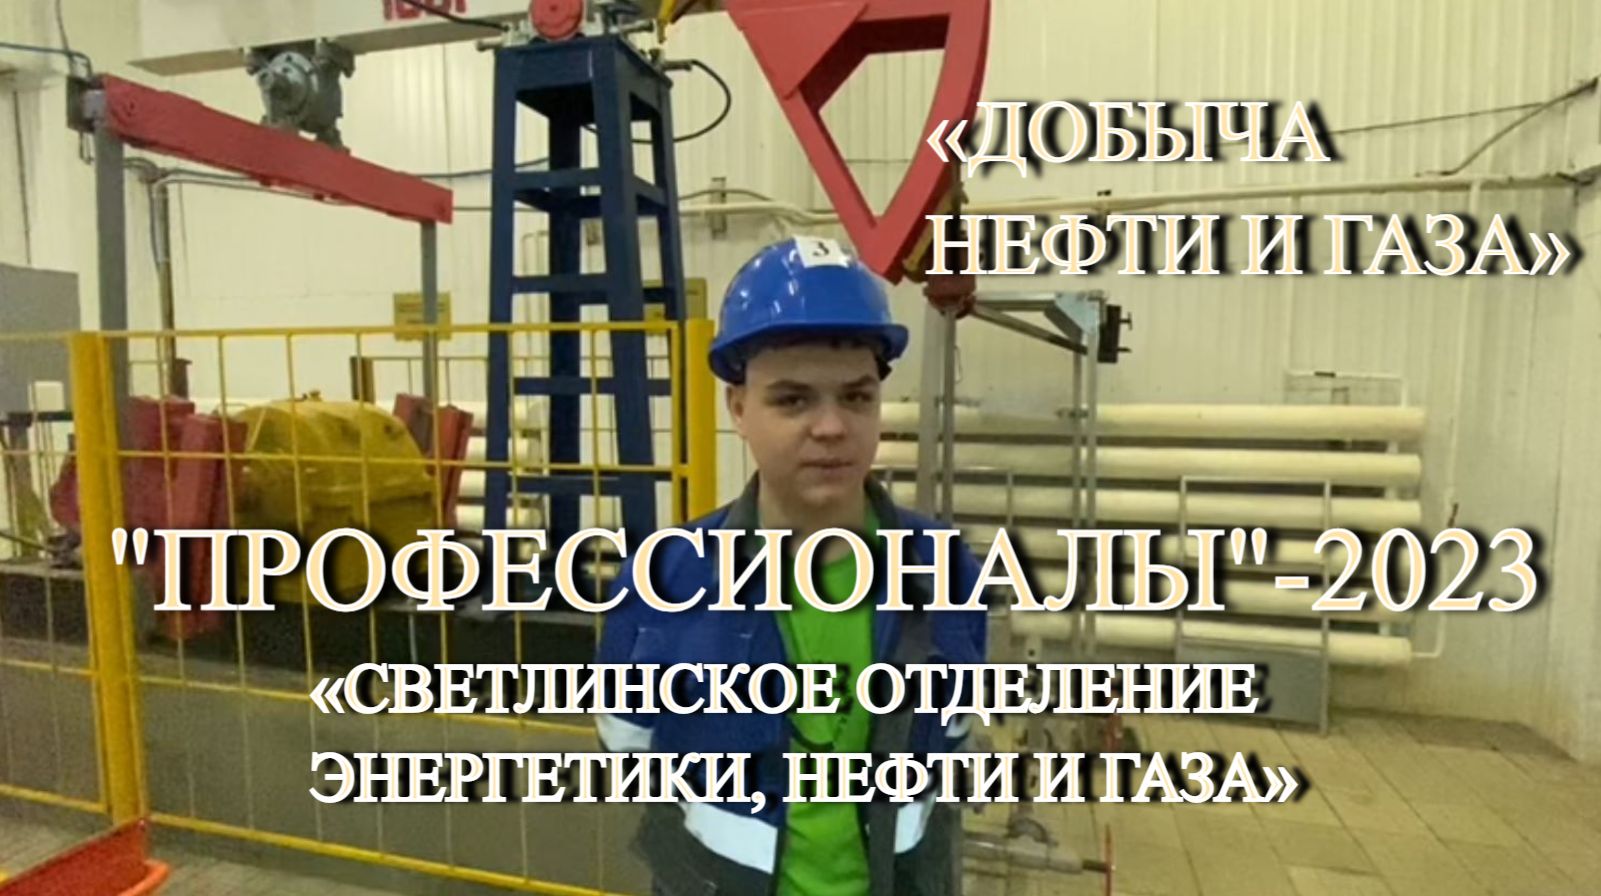 "Добыча нефти и газа": Айсиэн Данилов, студент четвертого курса, специальности «Нефтегазовое дело».